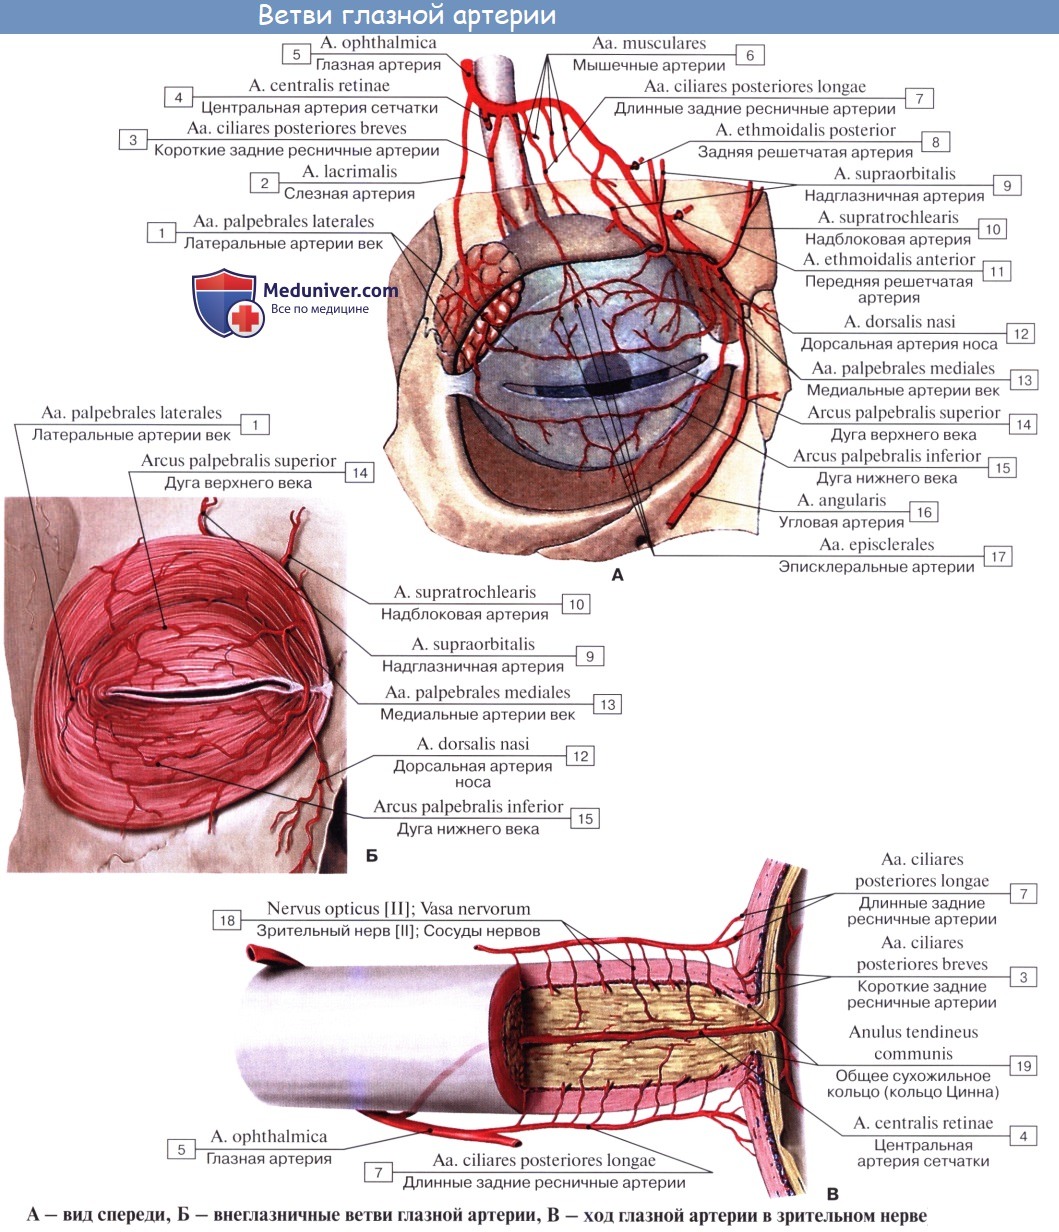 Анатомия: Ветви внутренней сонной артерии (a. carotis internae)